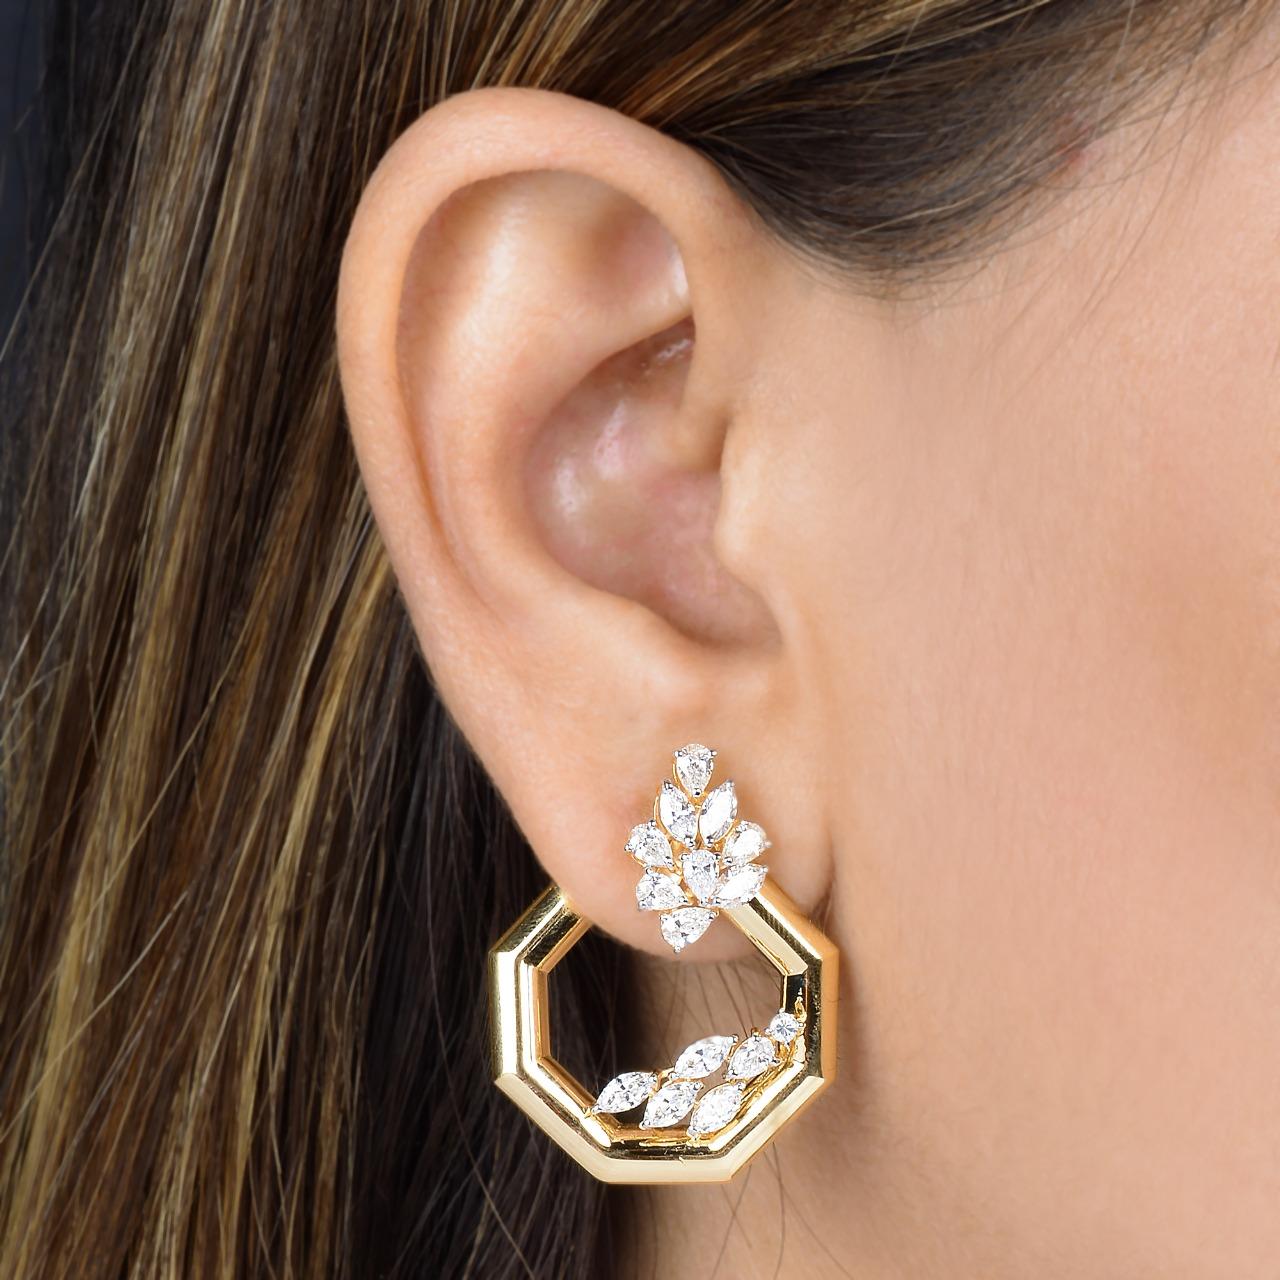 Diese wunderschönen Ohrringe sind aus 14-karätigem Gold gegossen und von Hand mit 2,70 Karat funkelnden Diamanten besetzt. Erhältlich in Rosé- und Gelbgold.

FOLLOW MEGHNA JEWELS Storefront, um die neueste Kollektion und exklusive Stücke zu sehen.